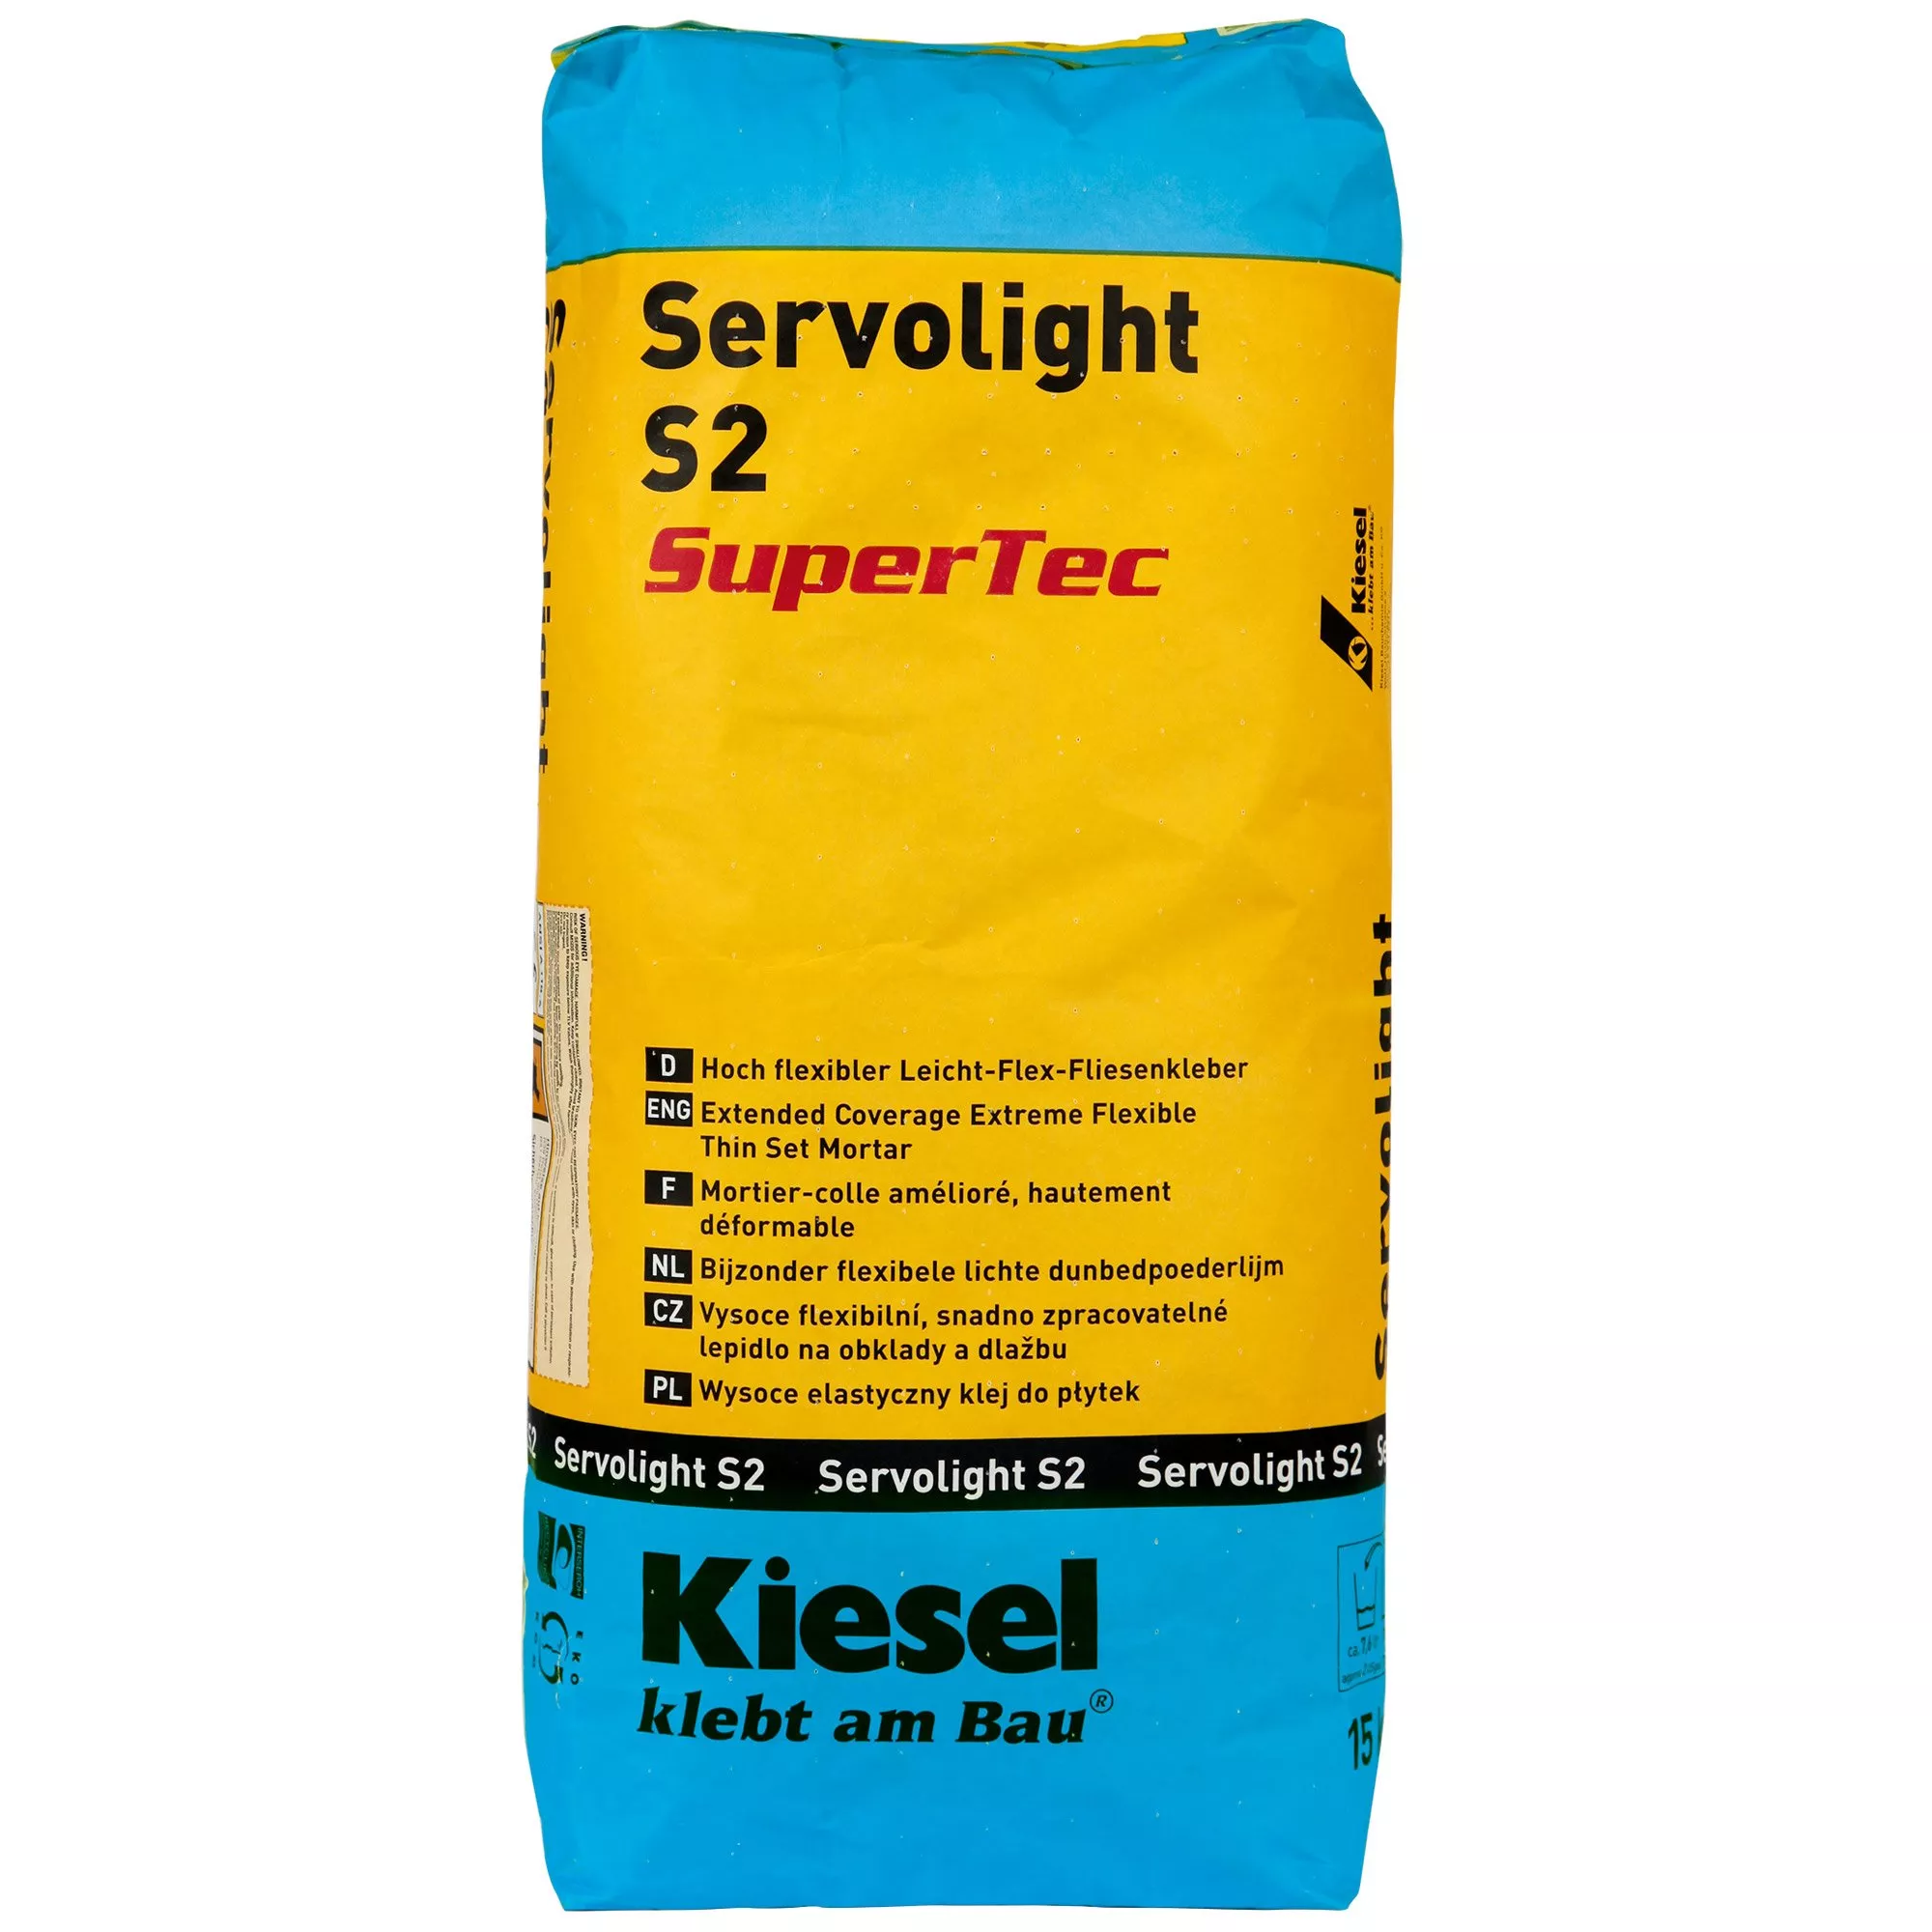 Kiesel Servolight S2 SuperTec - Yderst Fleksibel Klæbemiddel Til Lys-flex Fliser (15 Kg)